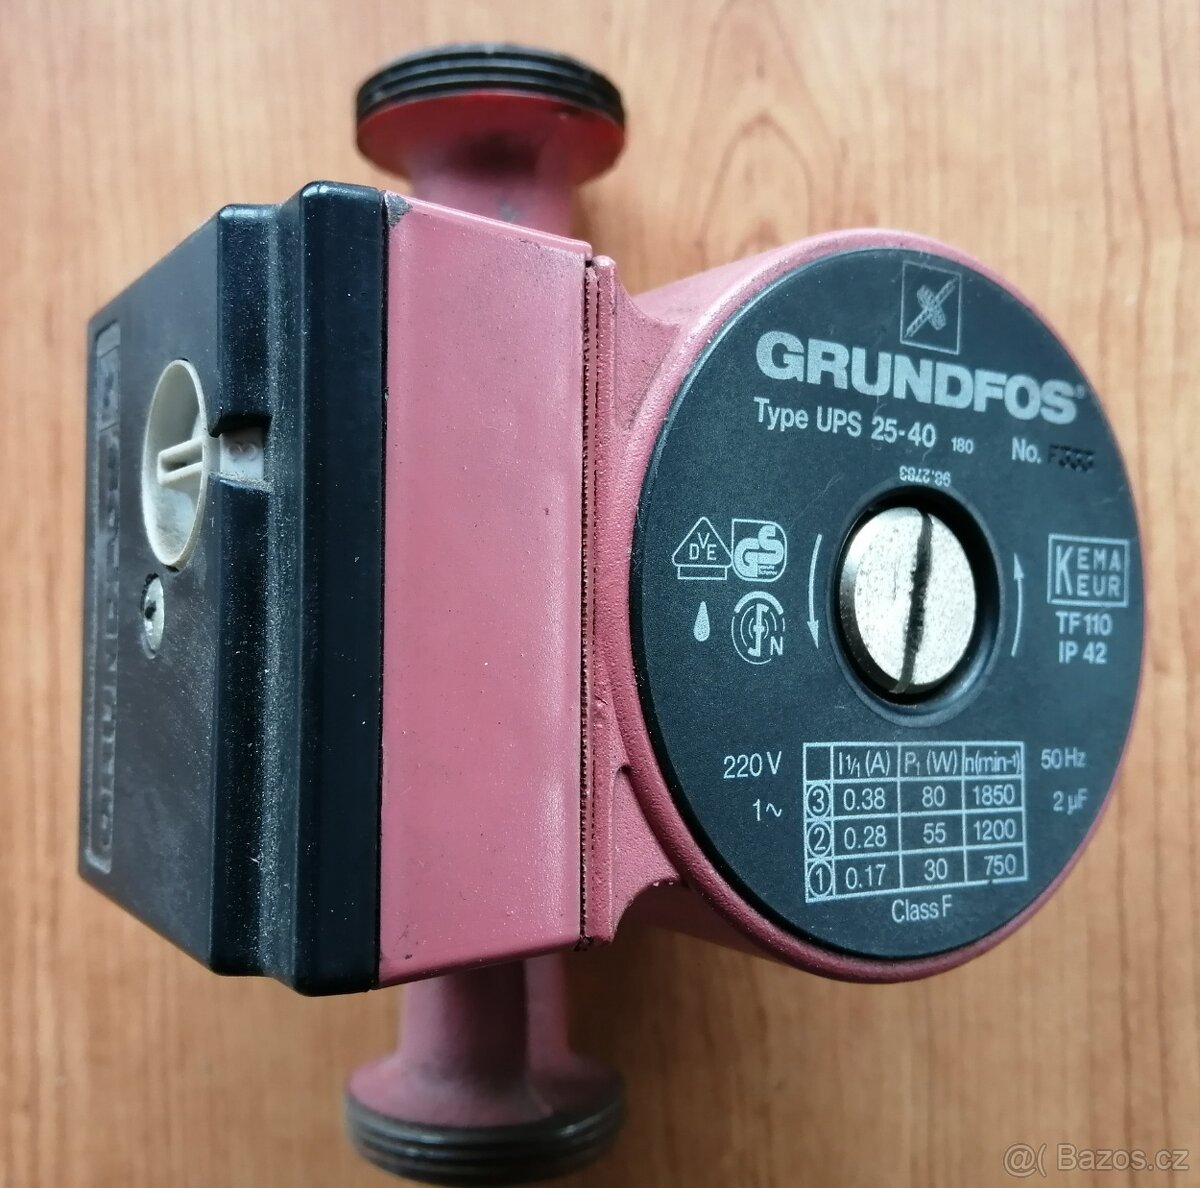 Oběhové vodní čerpadlo Grundfos UPS 25-40 180, použité, funk